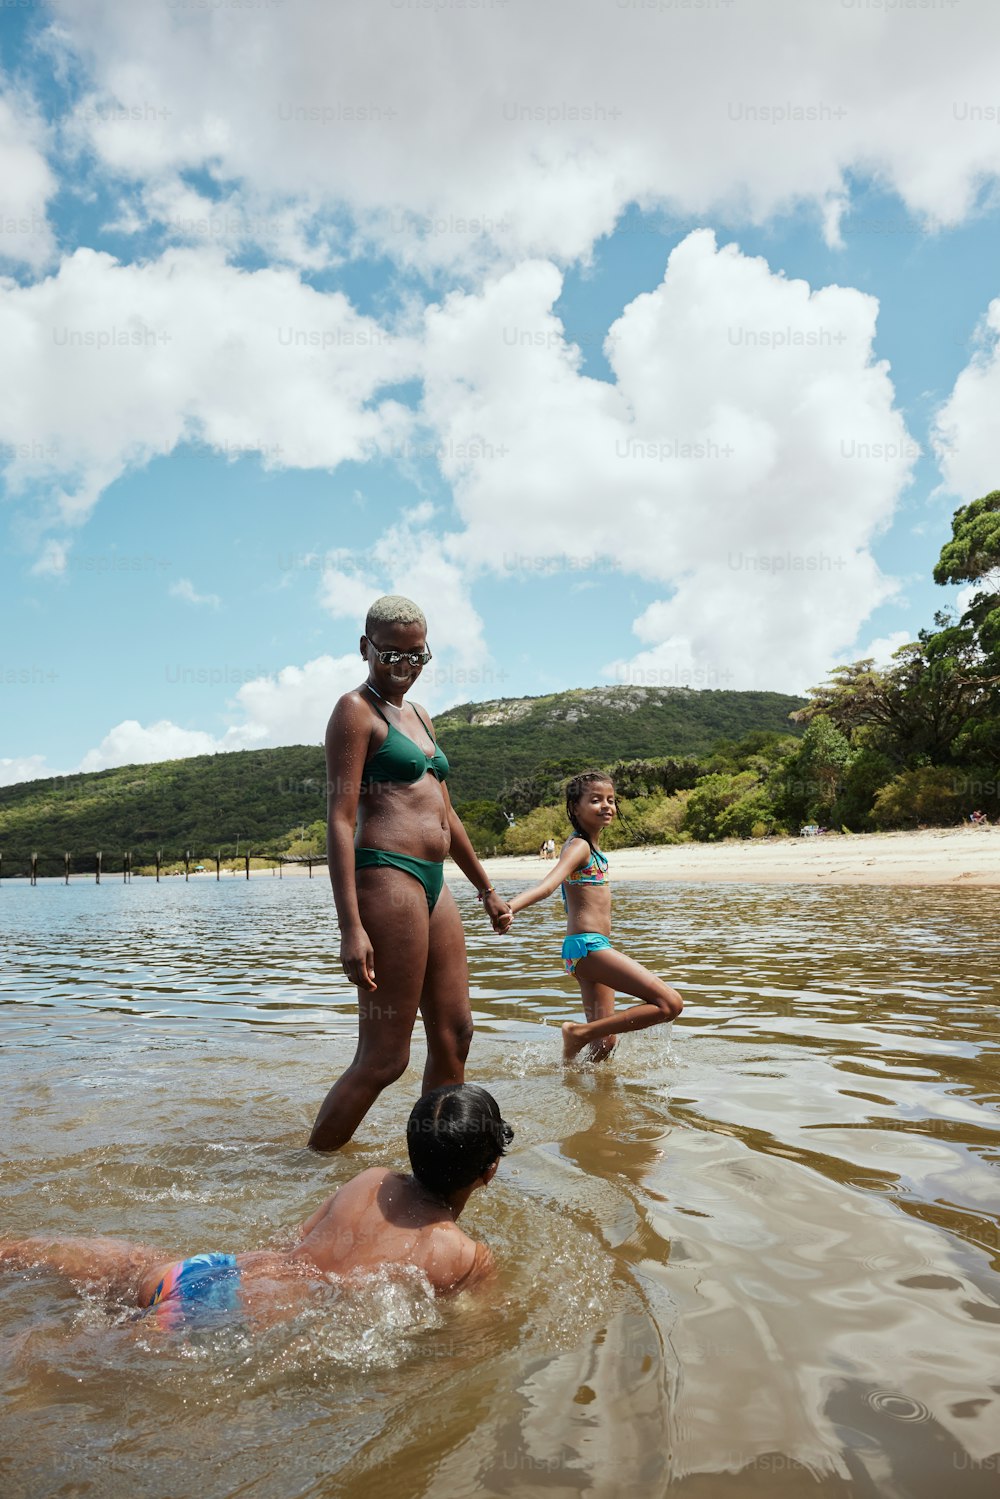 Eine Frau im Bikini steht neben einem Kind in einem Gewässer